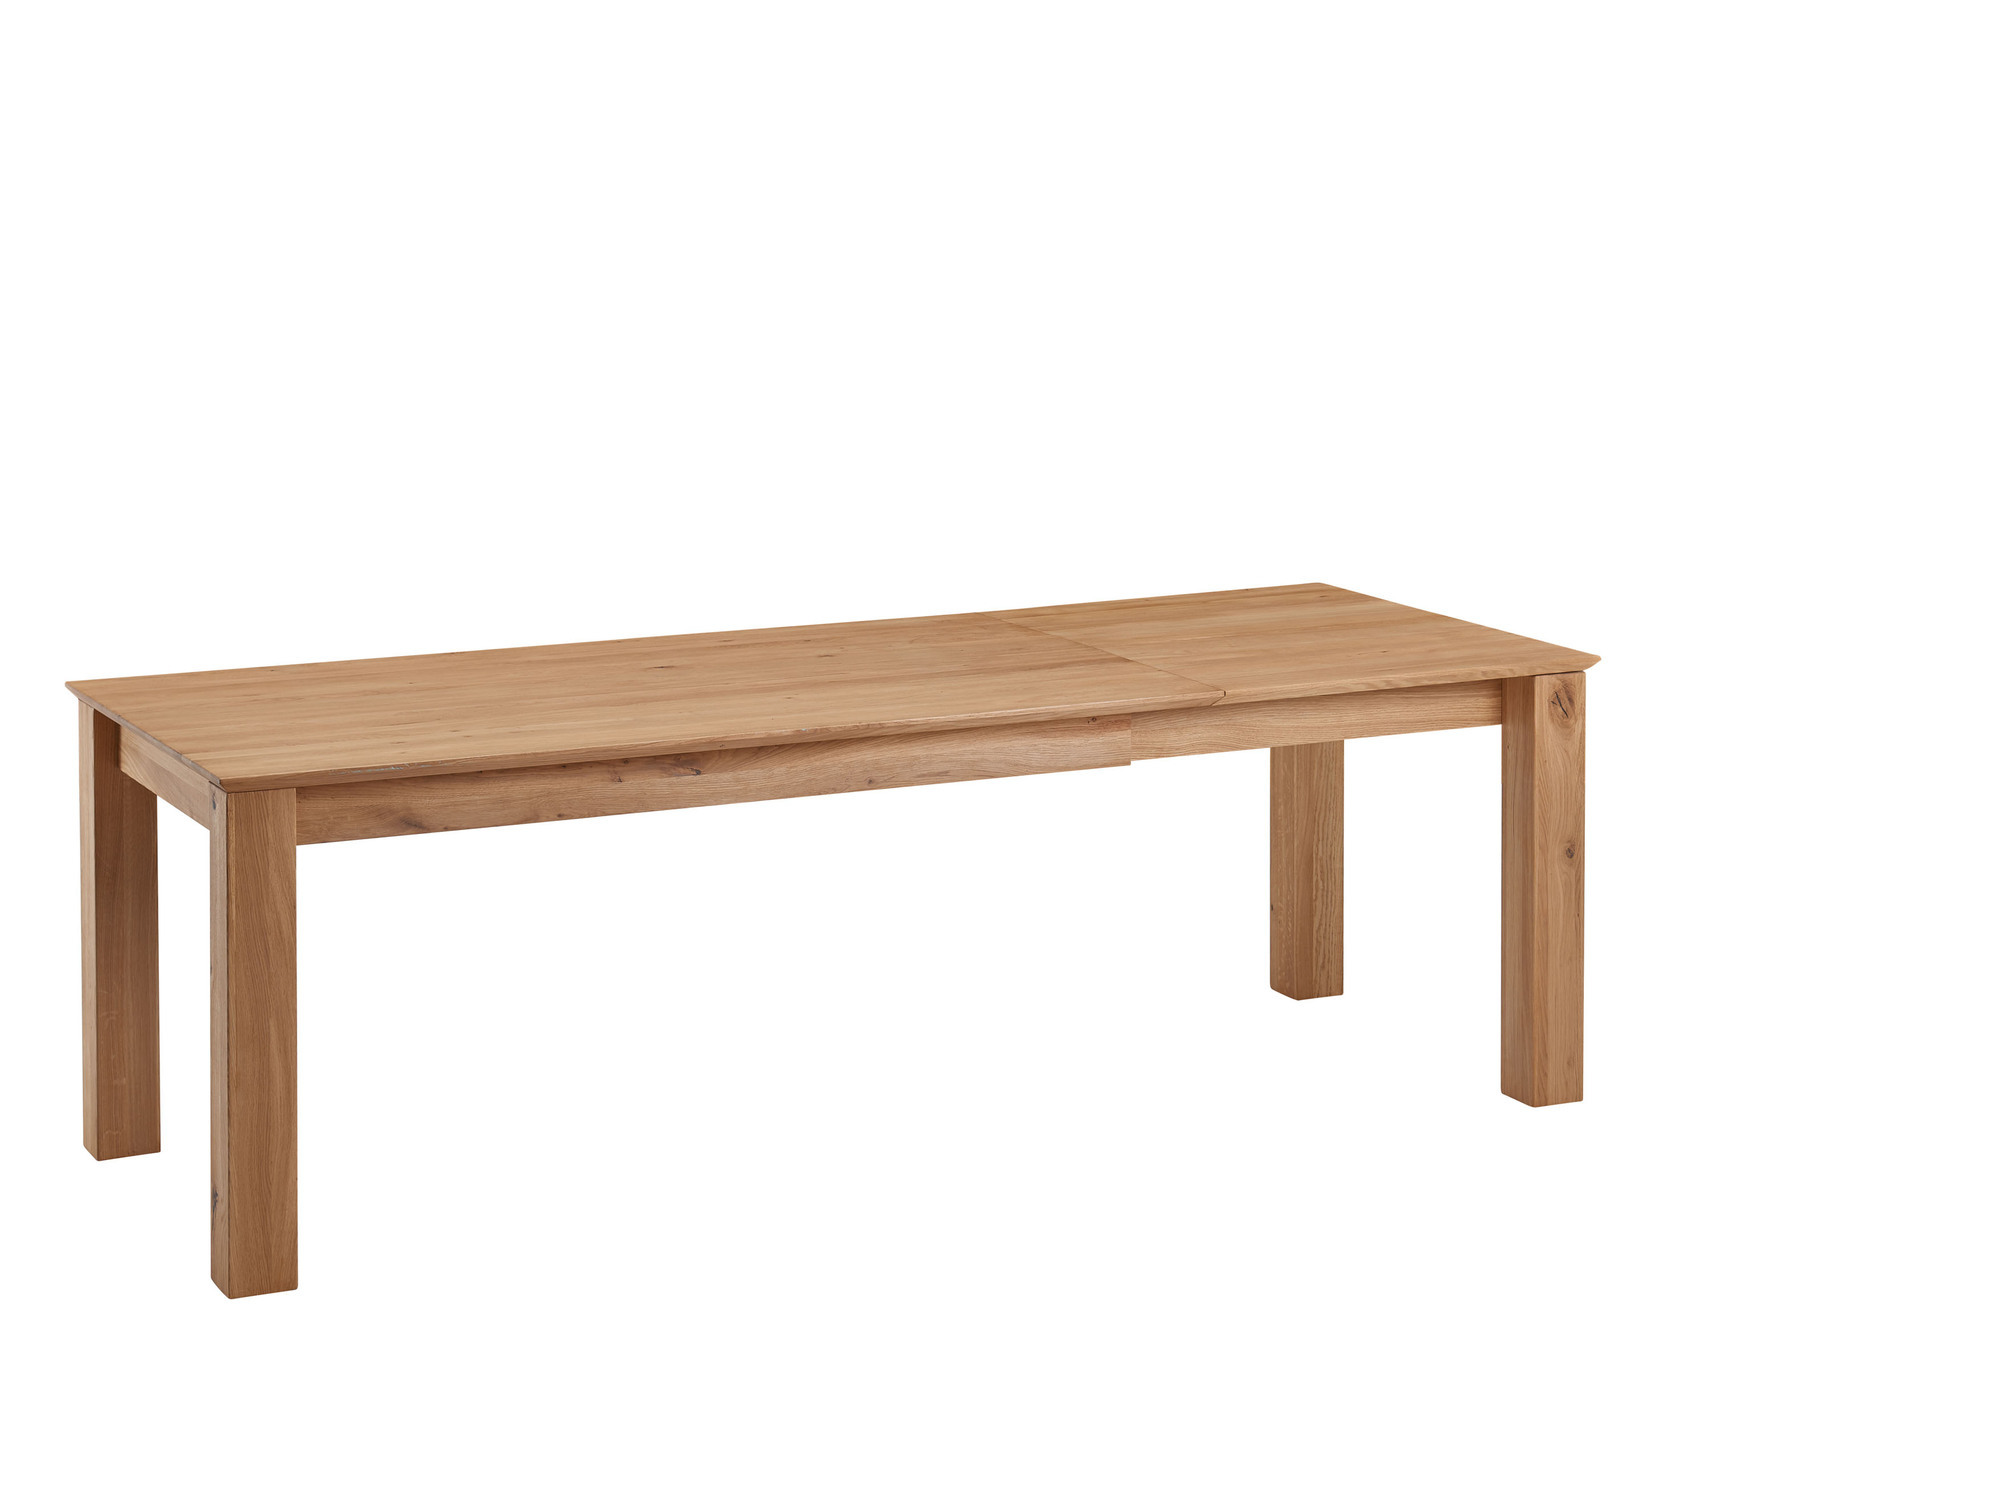 Tisch/Auszugstisch TI-0524 160 bis 230 cm